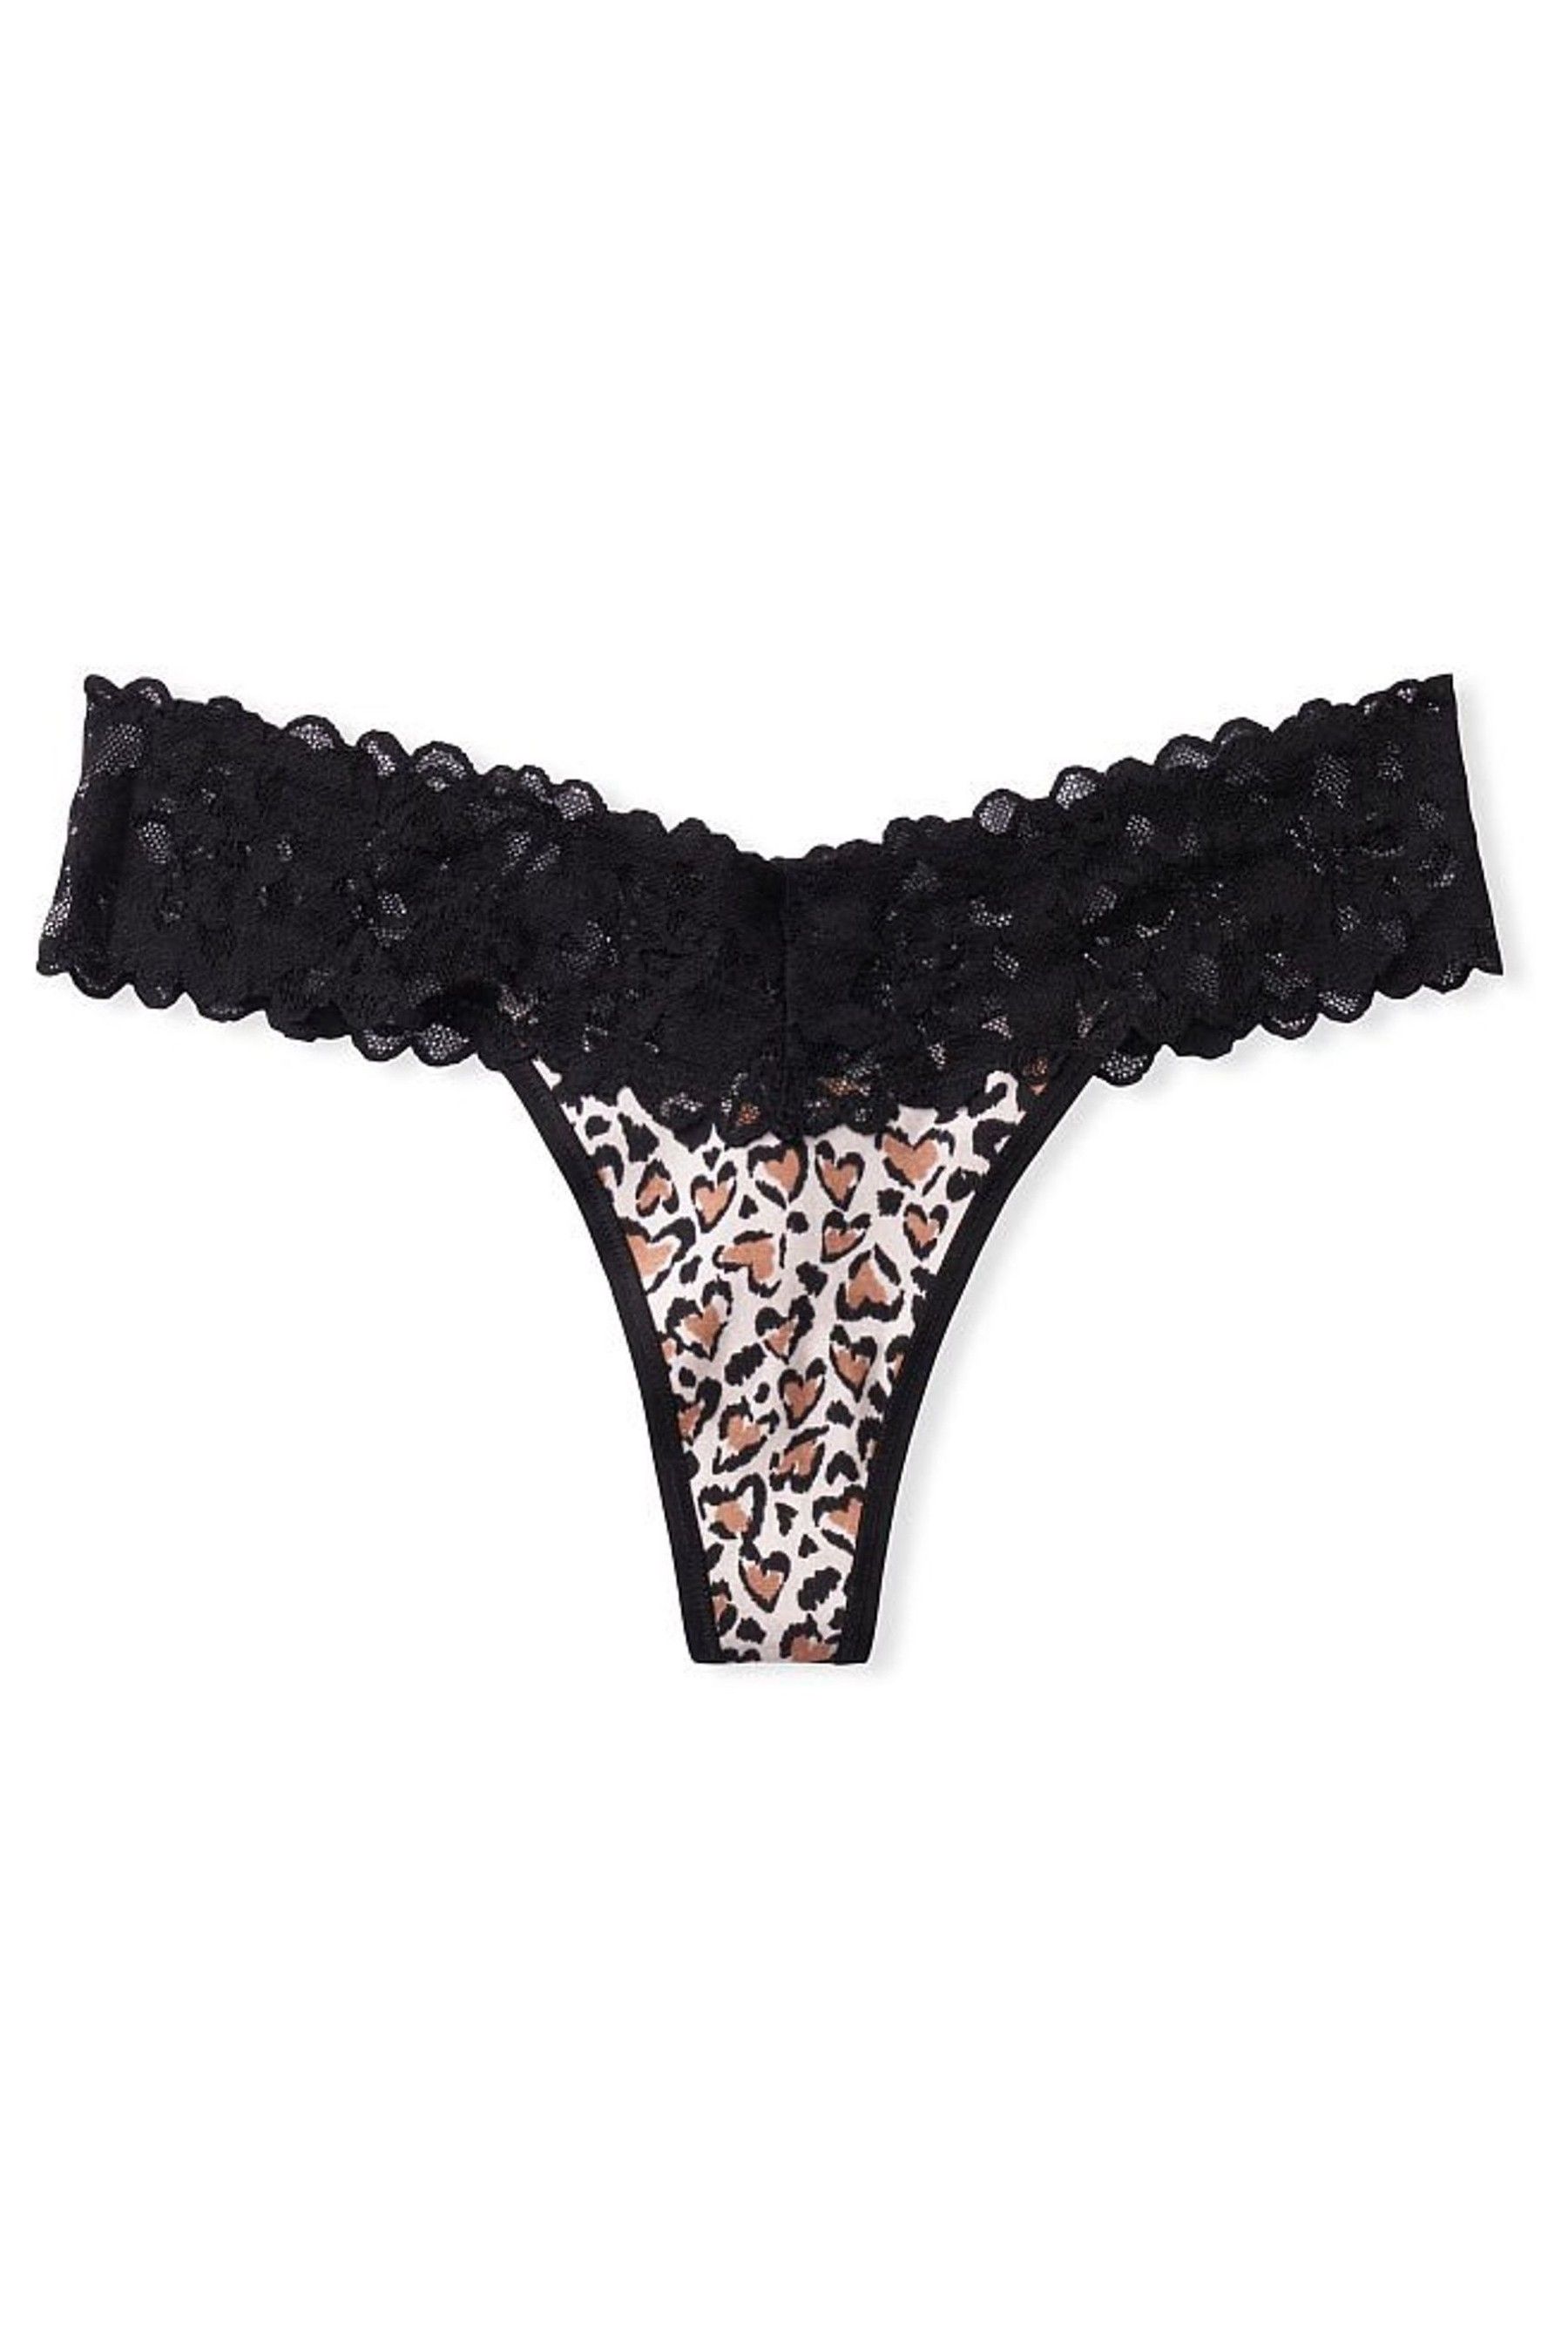 Buy Victorias Secret Lace Waist Thong Panty From The Victorias Secret Uk Online Shop 